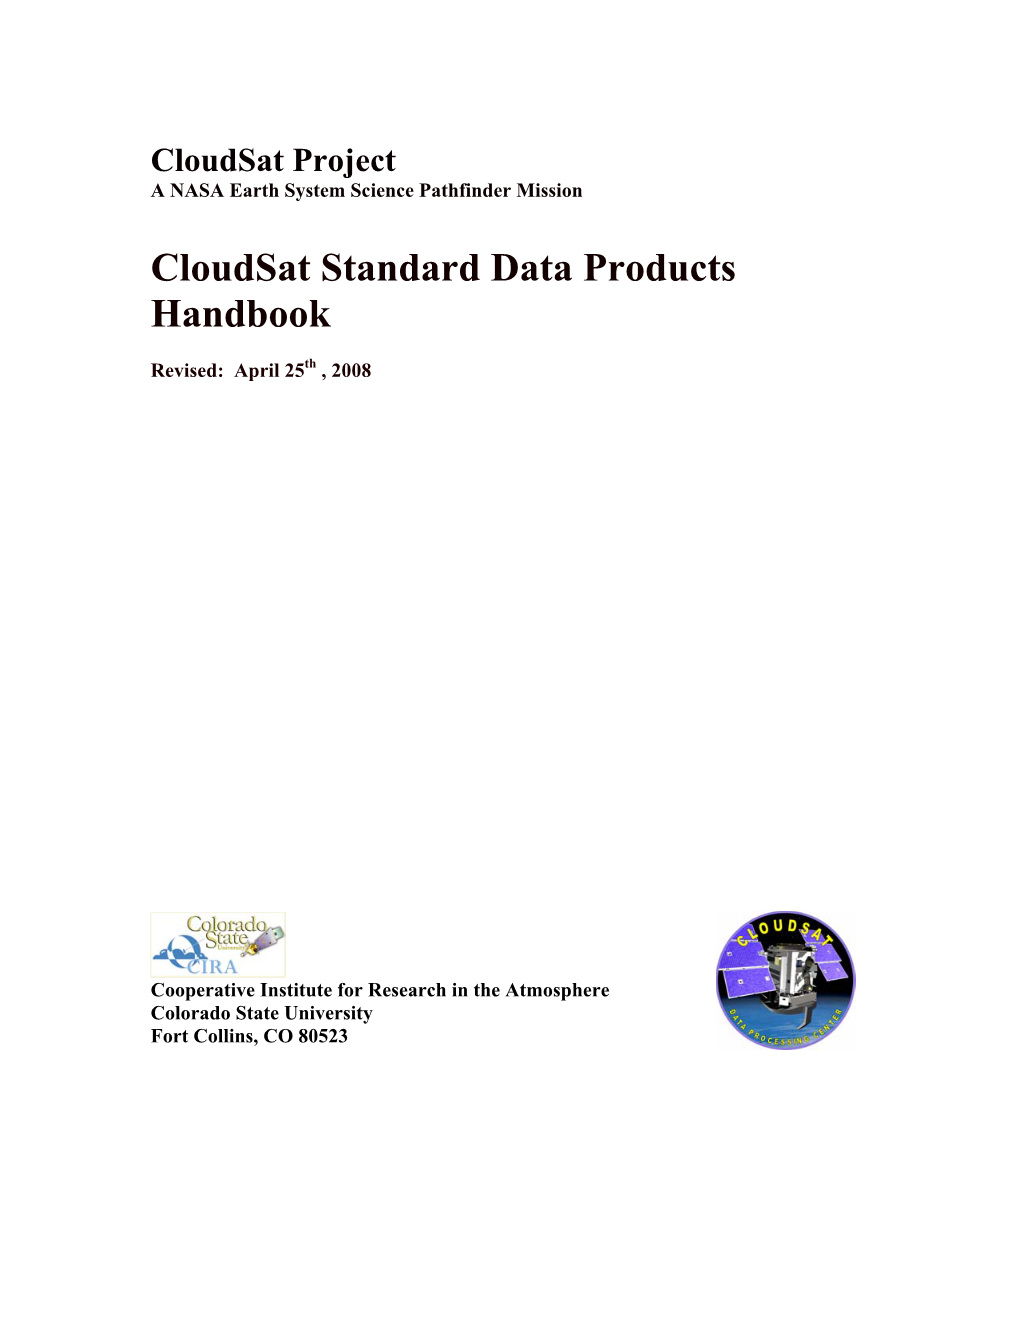 Cloudsat Data Users Handbook